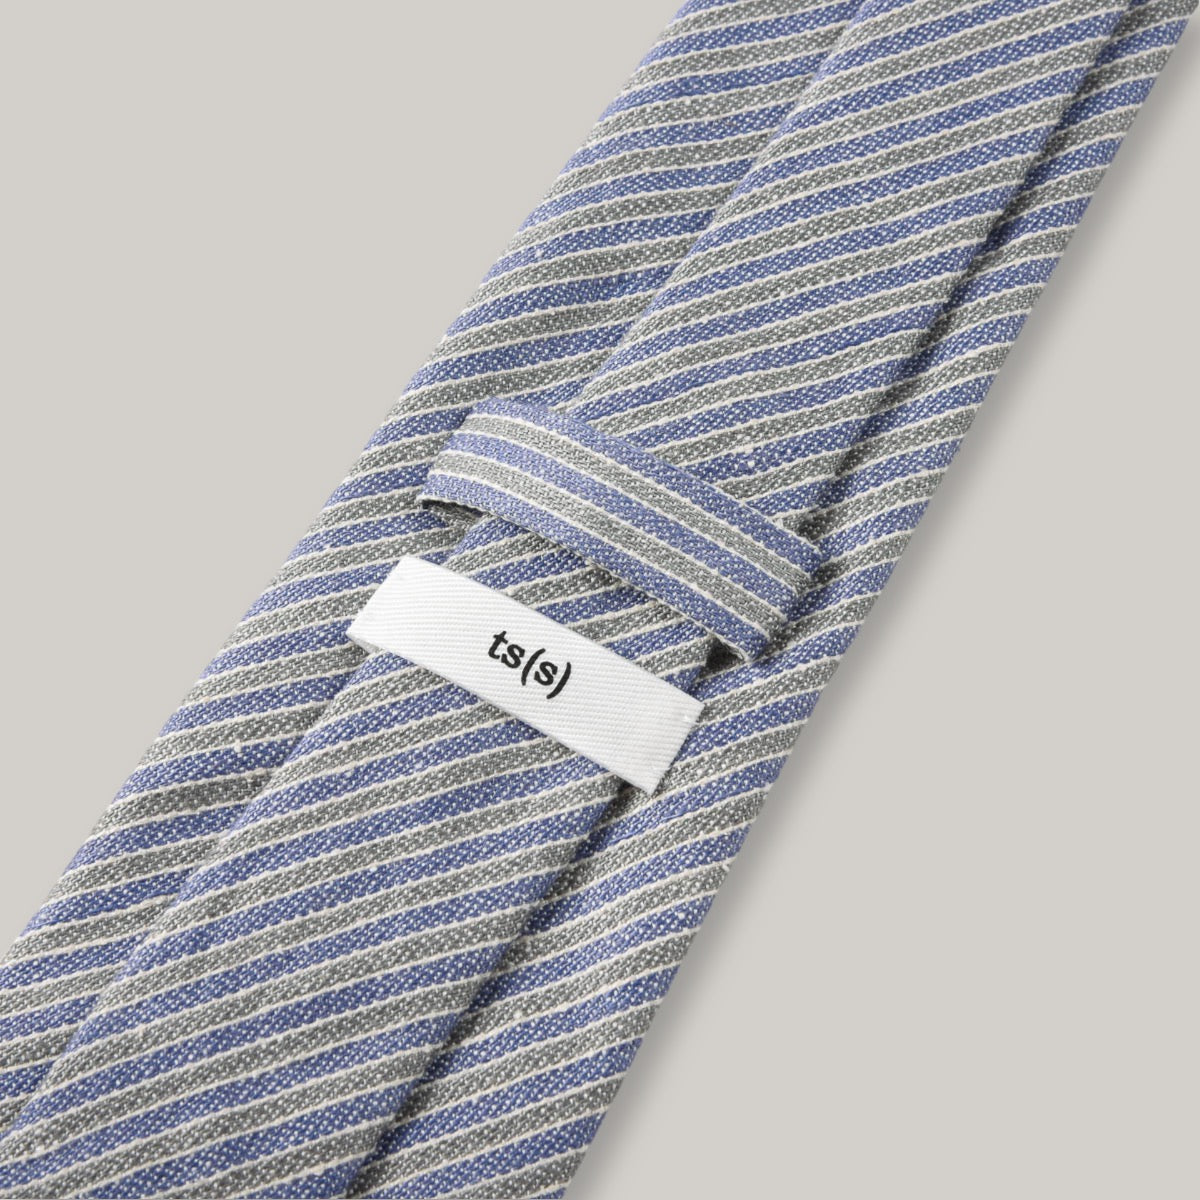 TS(S) ALTERNATE STRIPE CLOTH NECK TIE - BLUE/ GREY